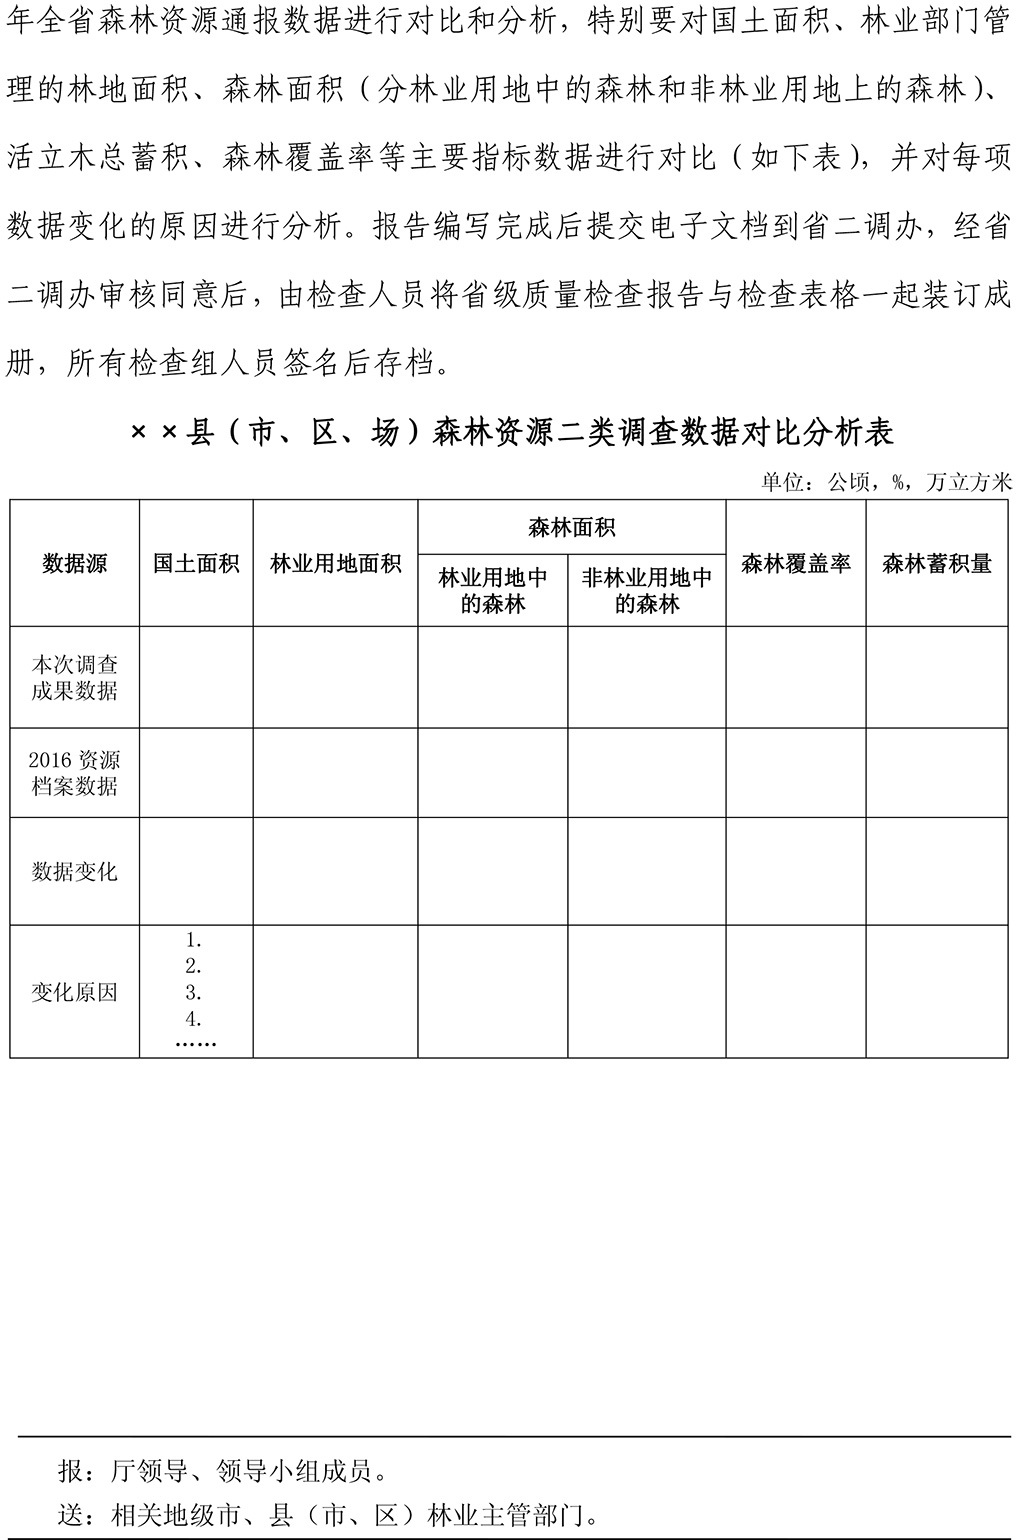 广东省森林资源二类调查第十七期